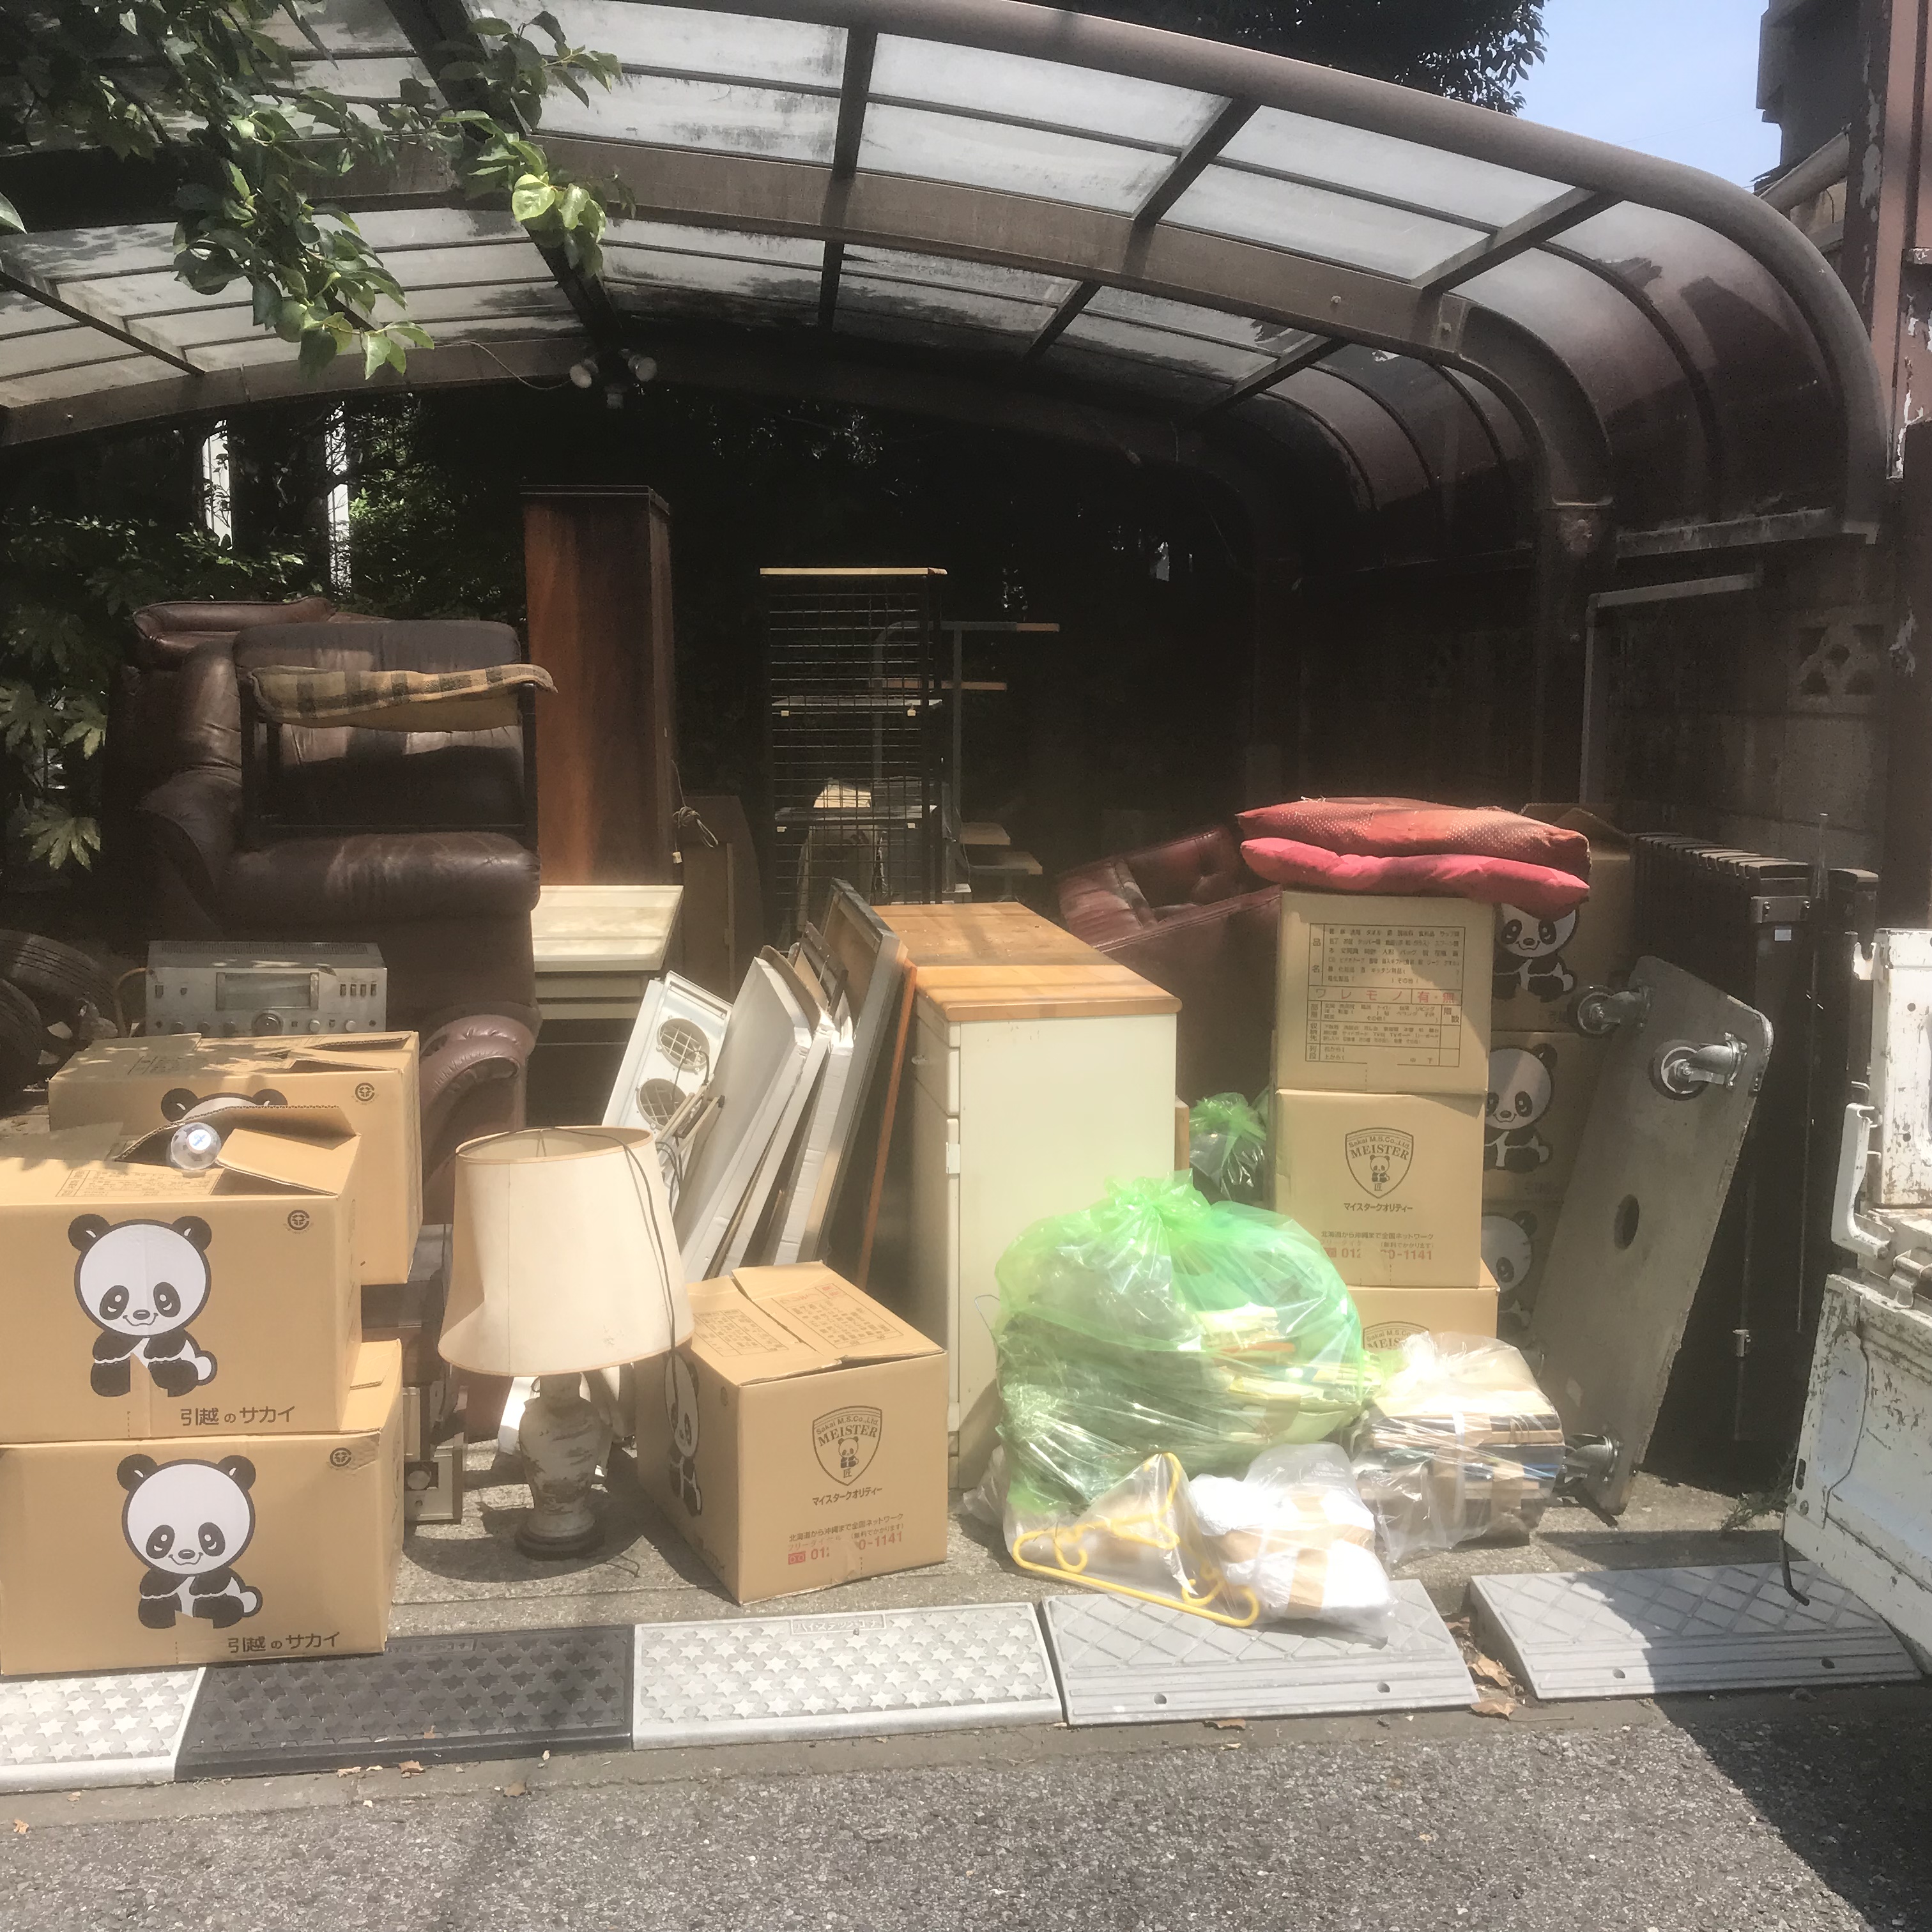 埼玉県新座市 一戸建ての家具、家電、不要品の片付けと回収